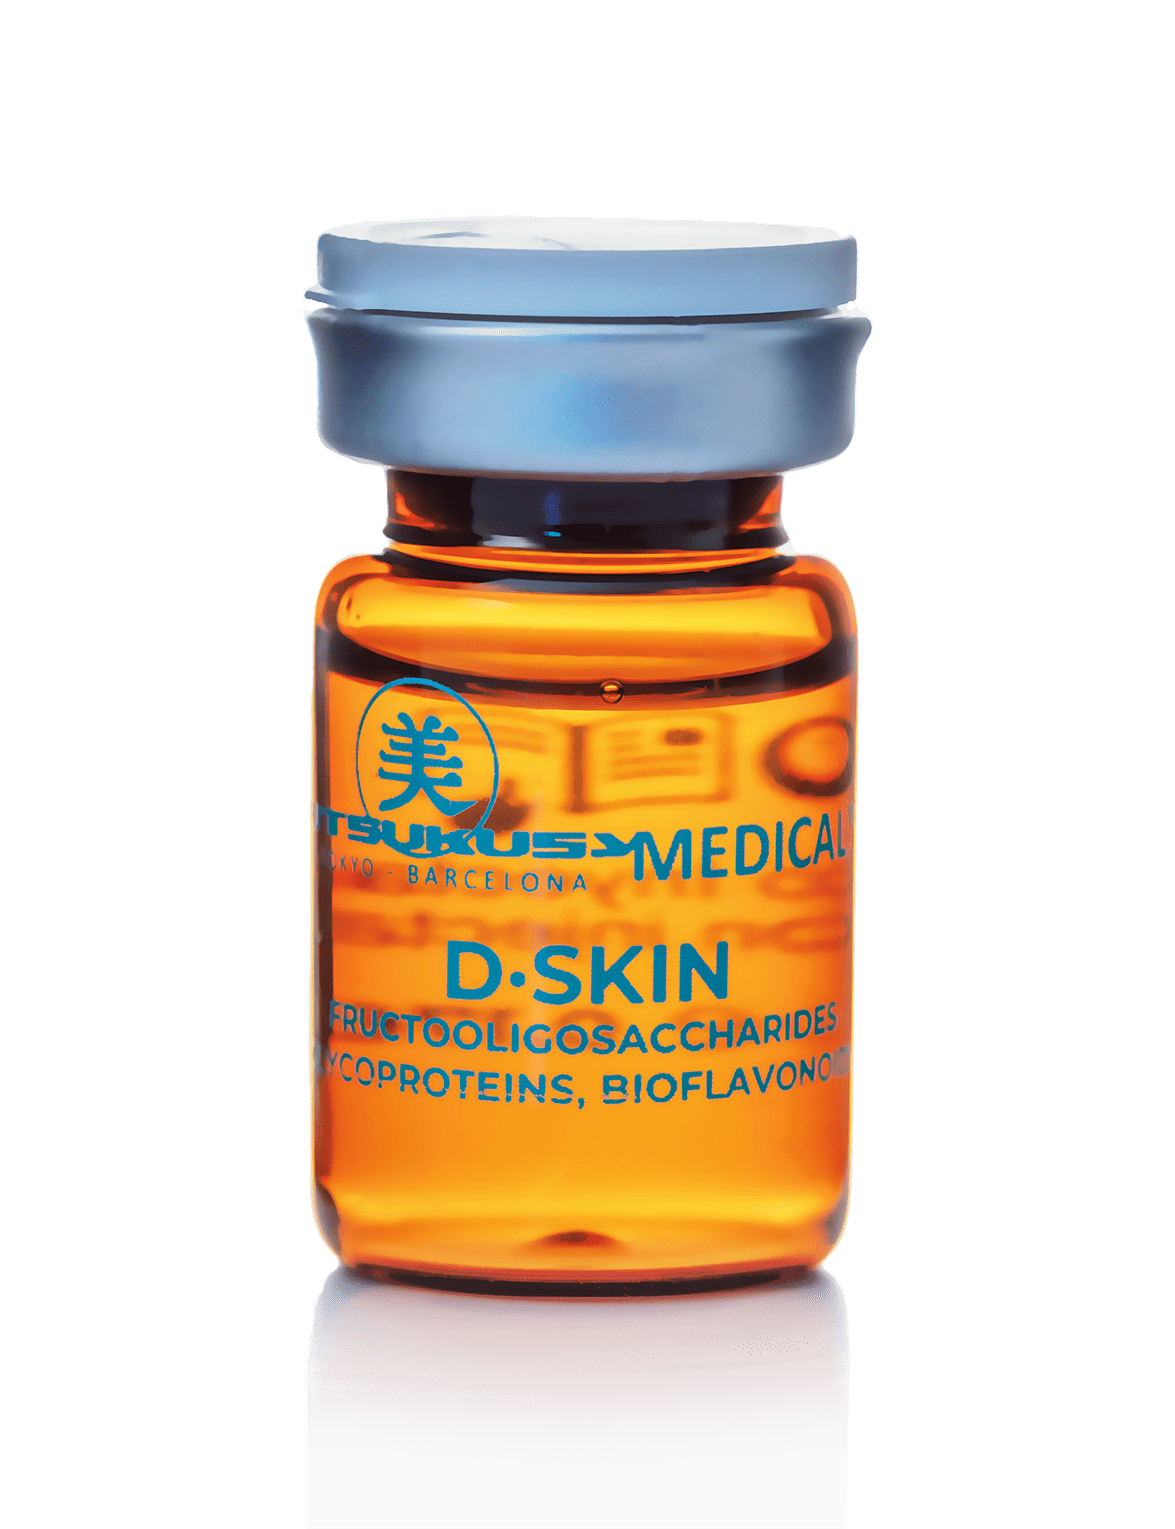 D Skin - sterile microneedling serum